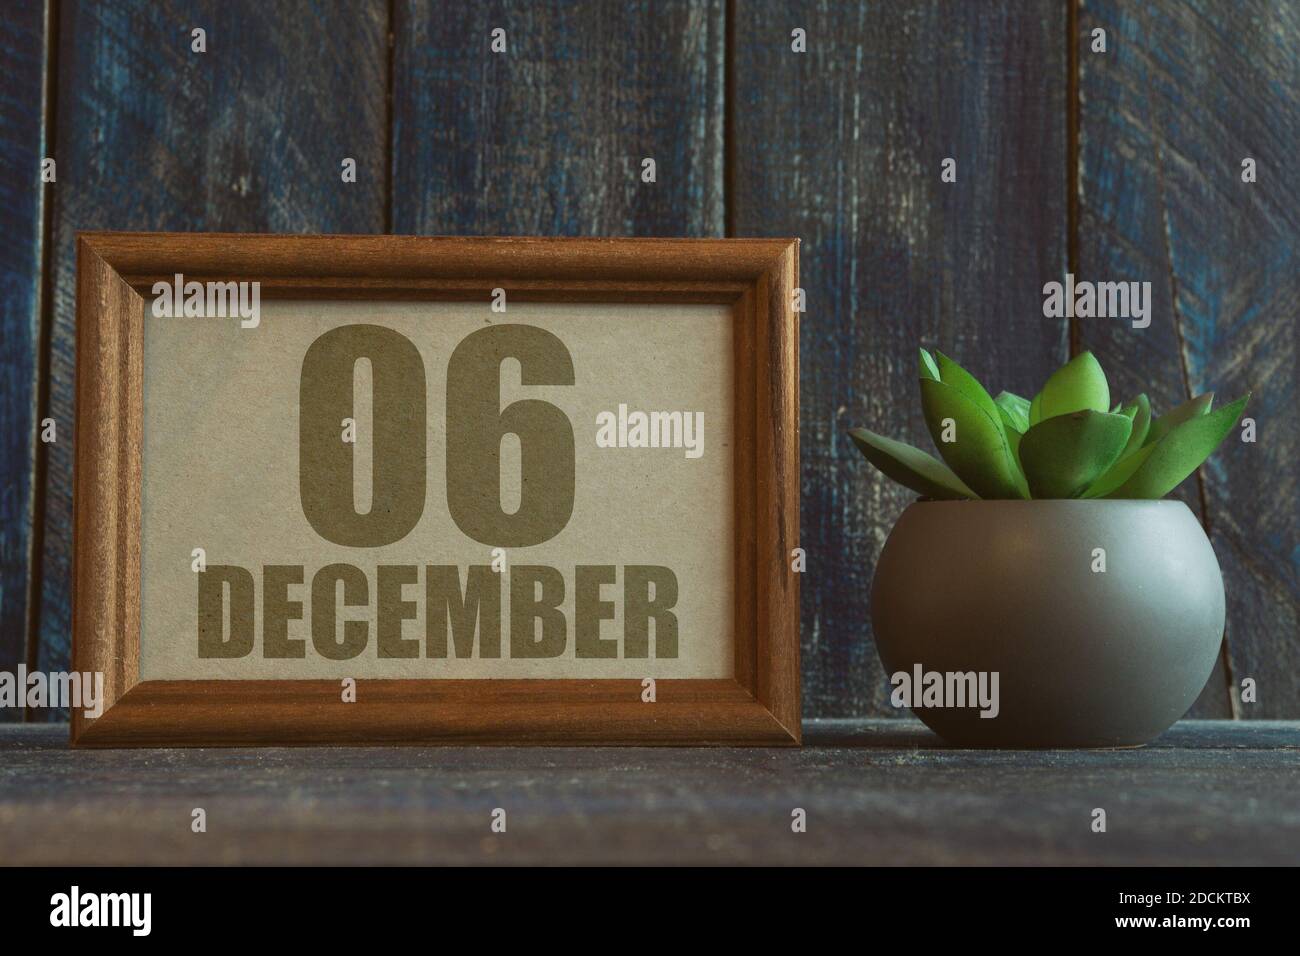 dezember. Tag 6 des Monats, Datum im Rahmen neben Sukkulenten auf Holzhintergrund Wintermonat, Tag des Jahres Konzept. Stockfoto